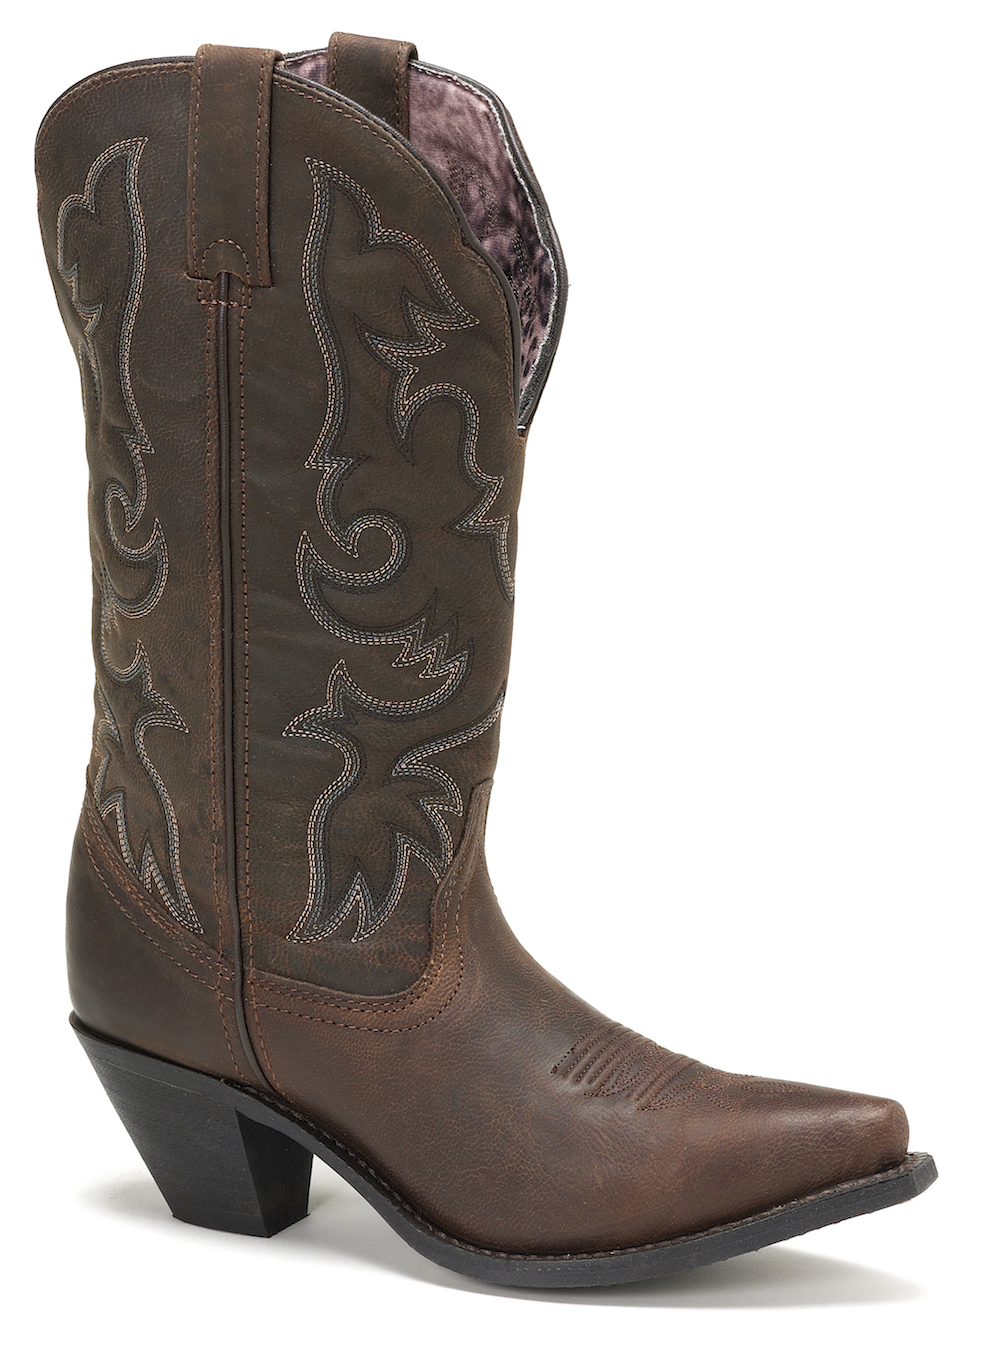 Laredo Women S Boots Size Chart